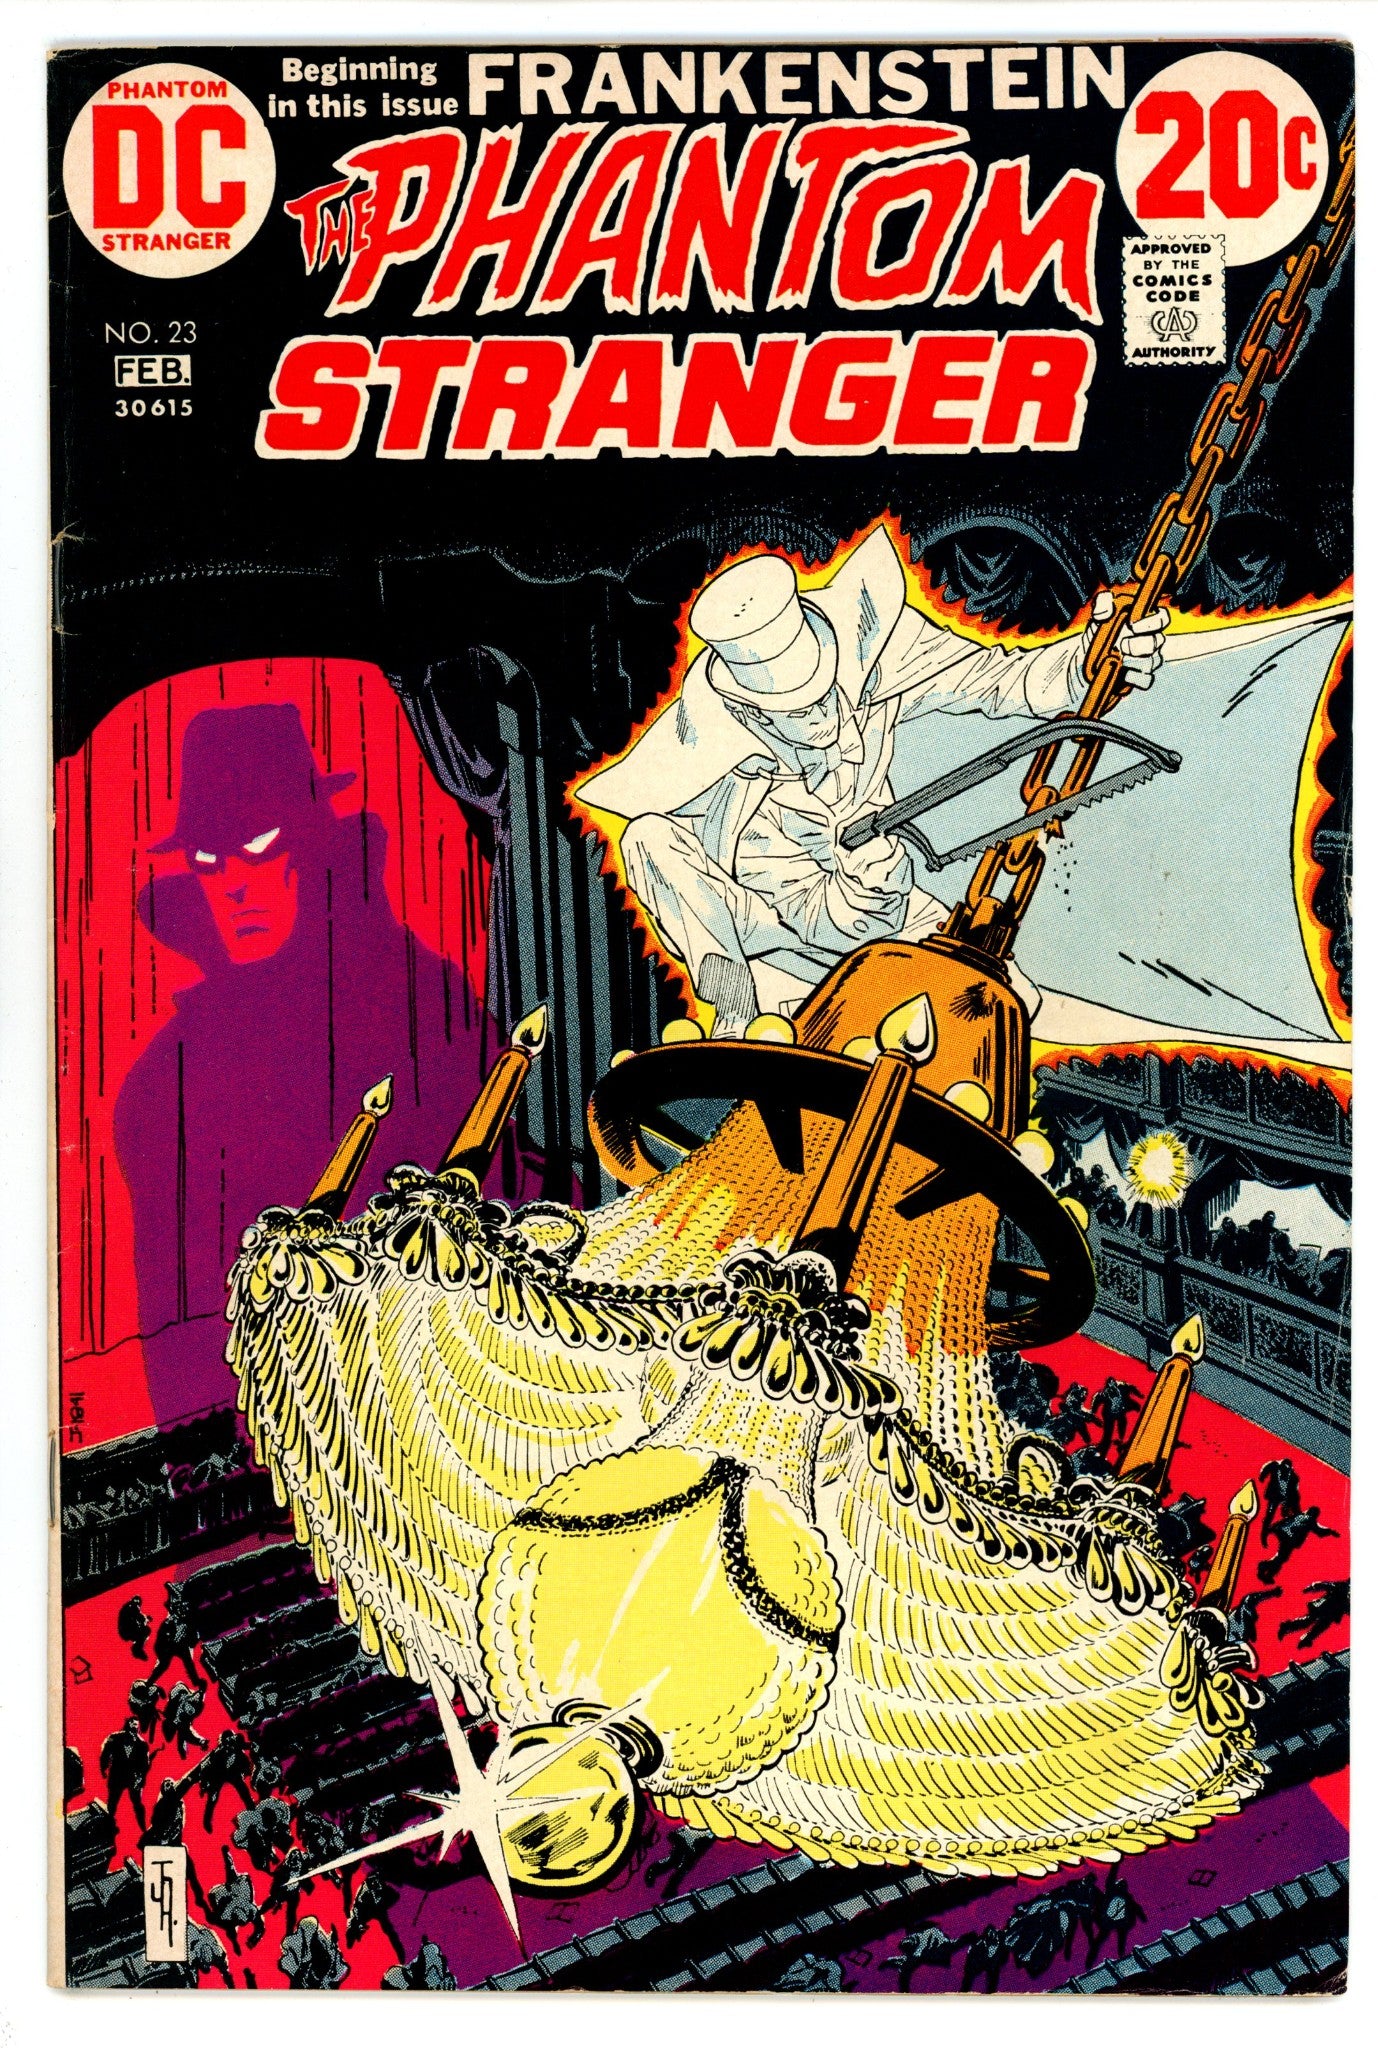 The Phantom Stranger Vol 2 23 FN (6.0) (1973) 